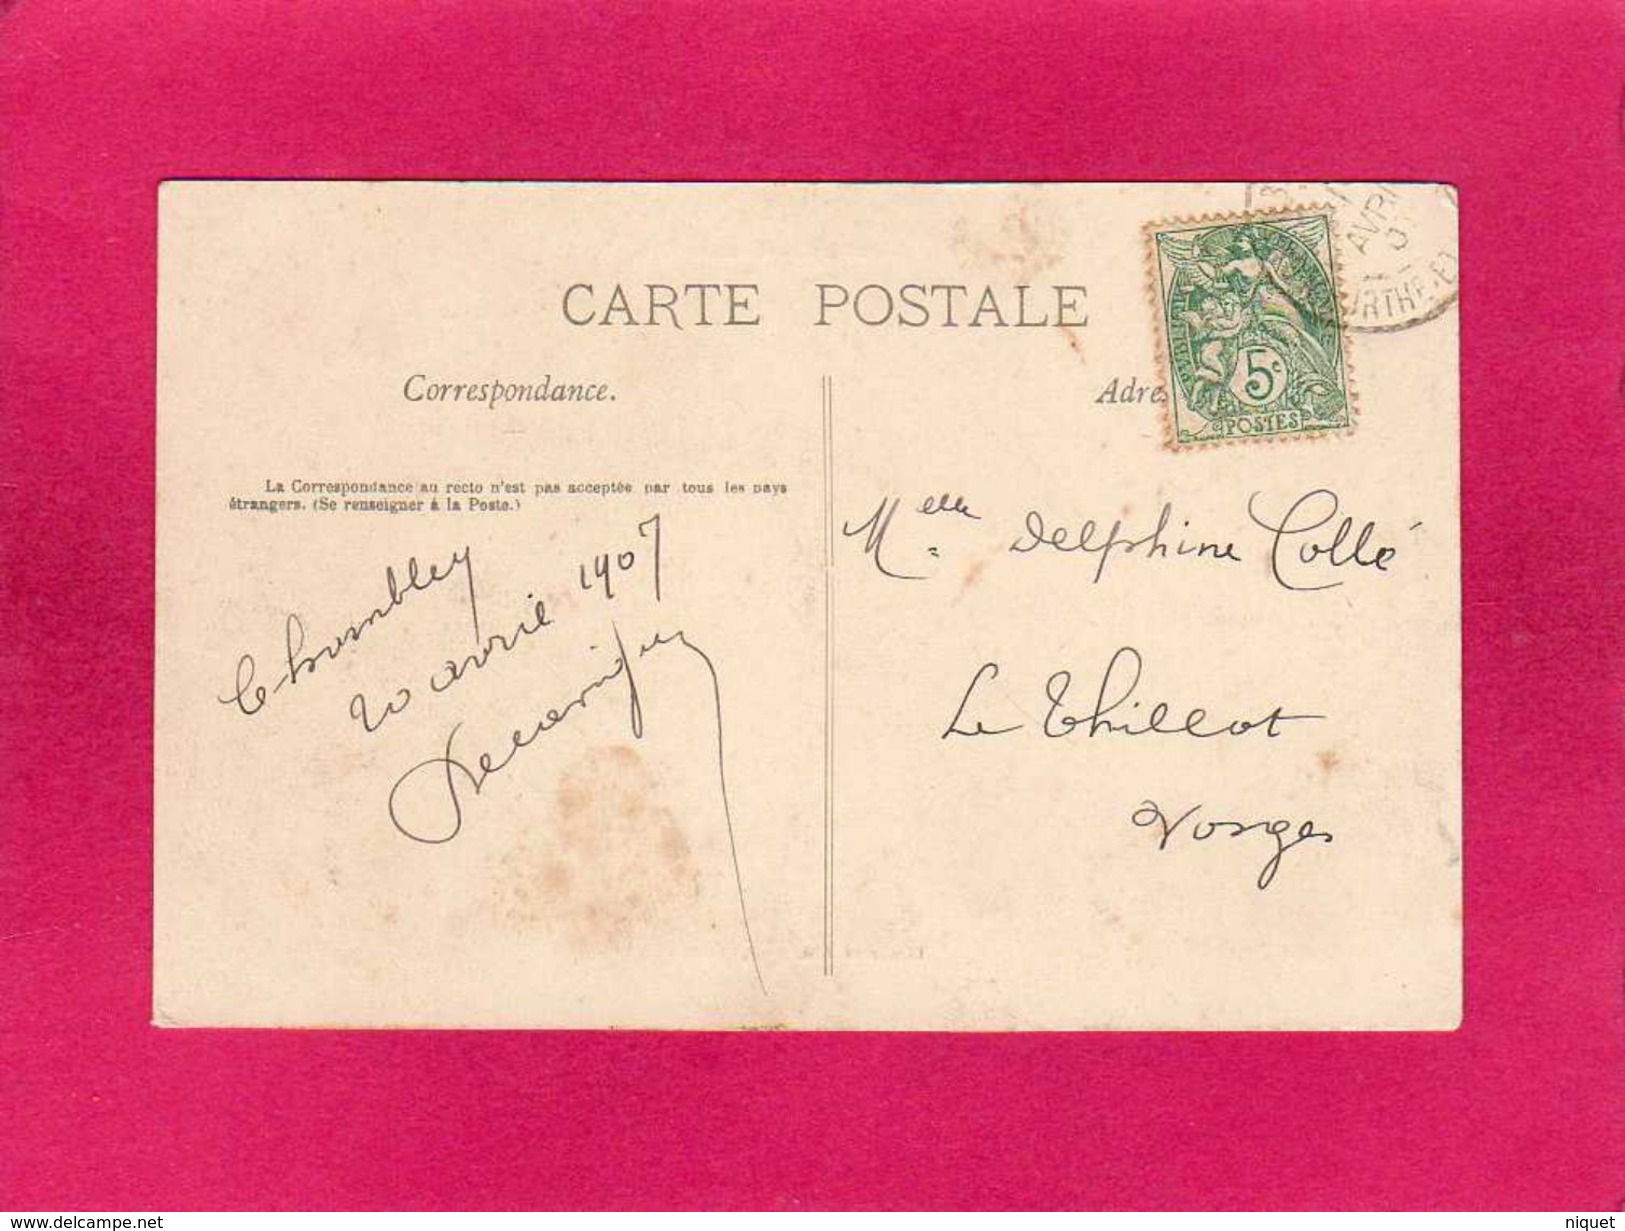 54 Meurthe Et Moselle, Chambley, Grande-Rue, Animée, Commerce, Bar, Charrette, 1907, (Dieudonné) - Chambley Bussieres